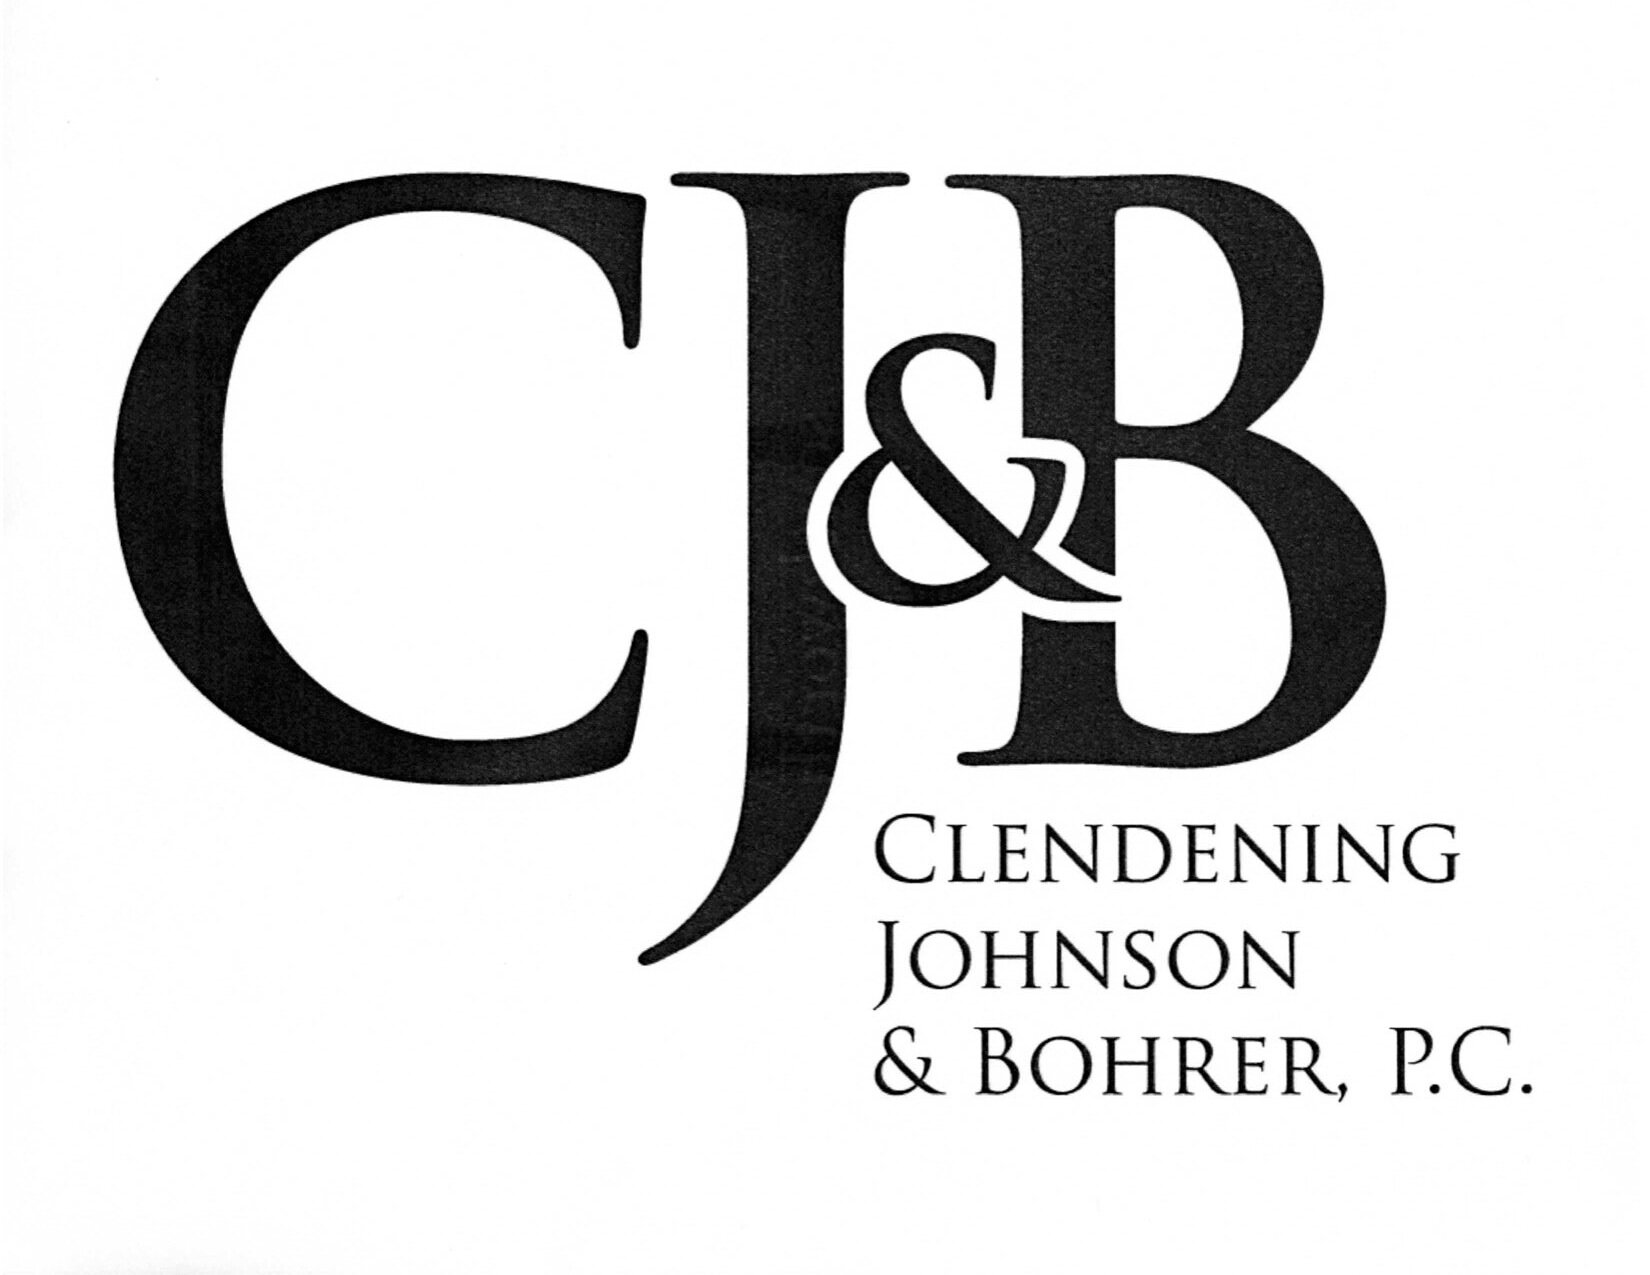 Clendening+Johnson+Bohrer.jpg